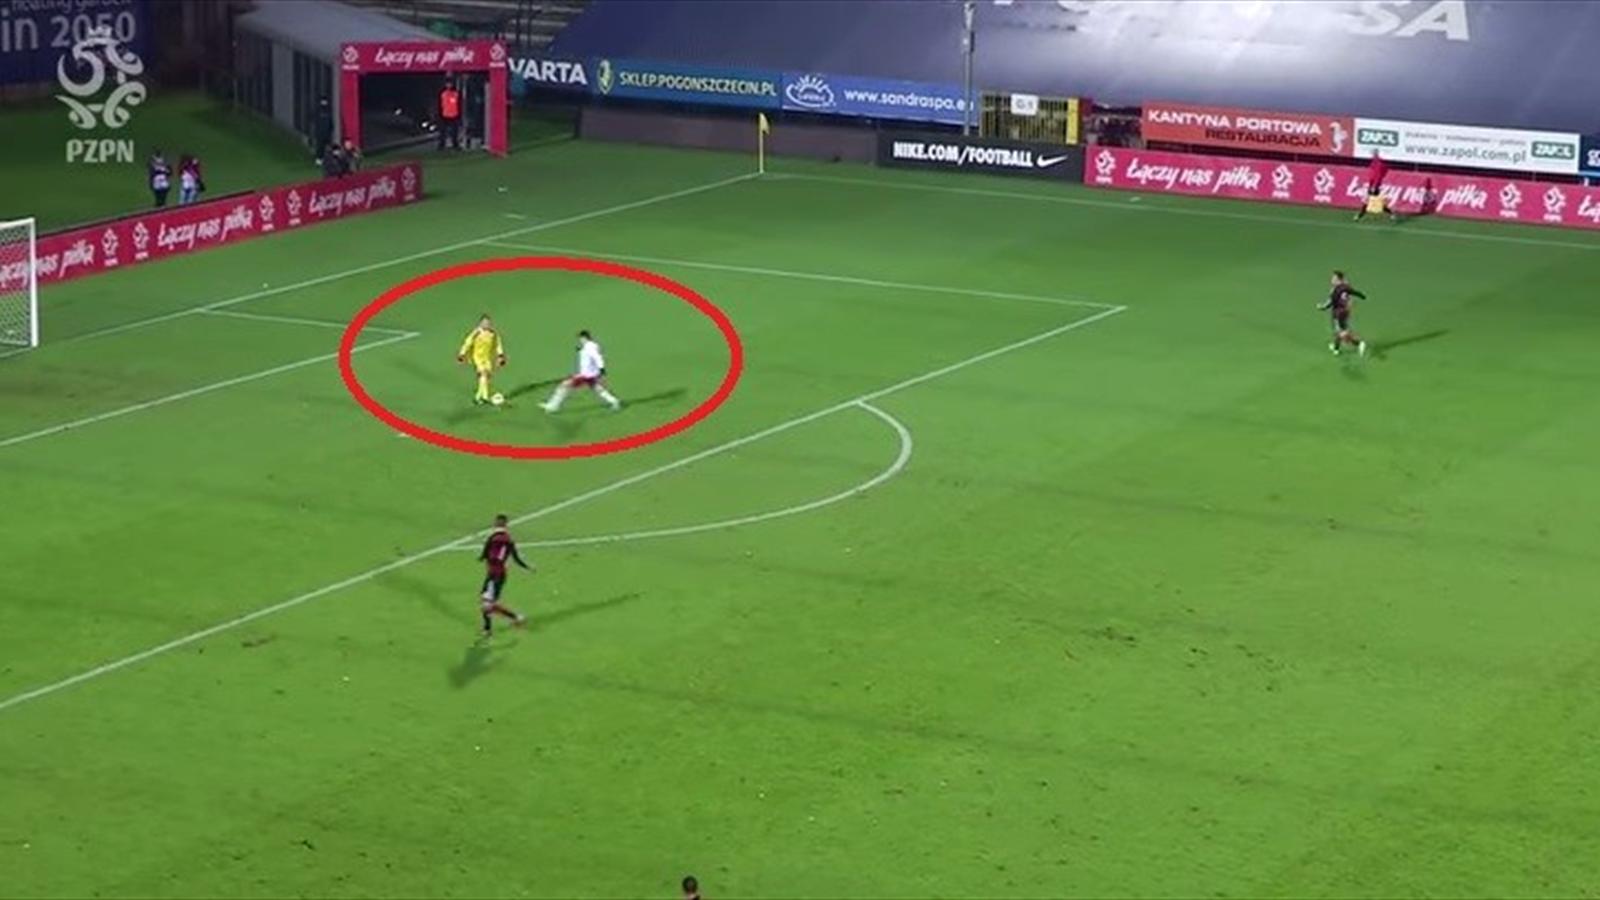 Następca Manuela Neuera efektownie ośmieszył Polaka (VIDEO)